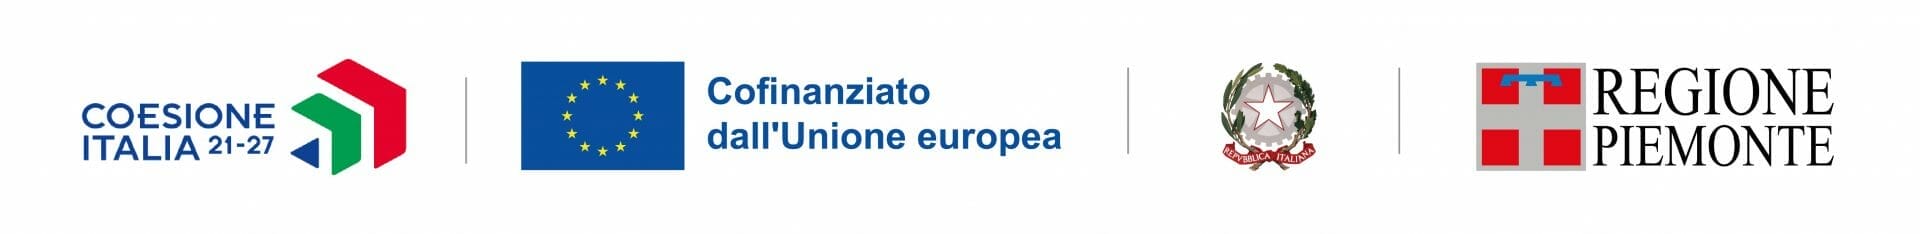 Corsi di formazione gratuiti e finanziati da Regione Piemonte e Fondo Sociale Europeo